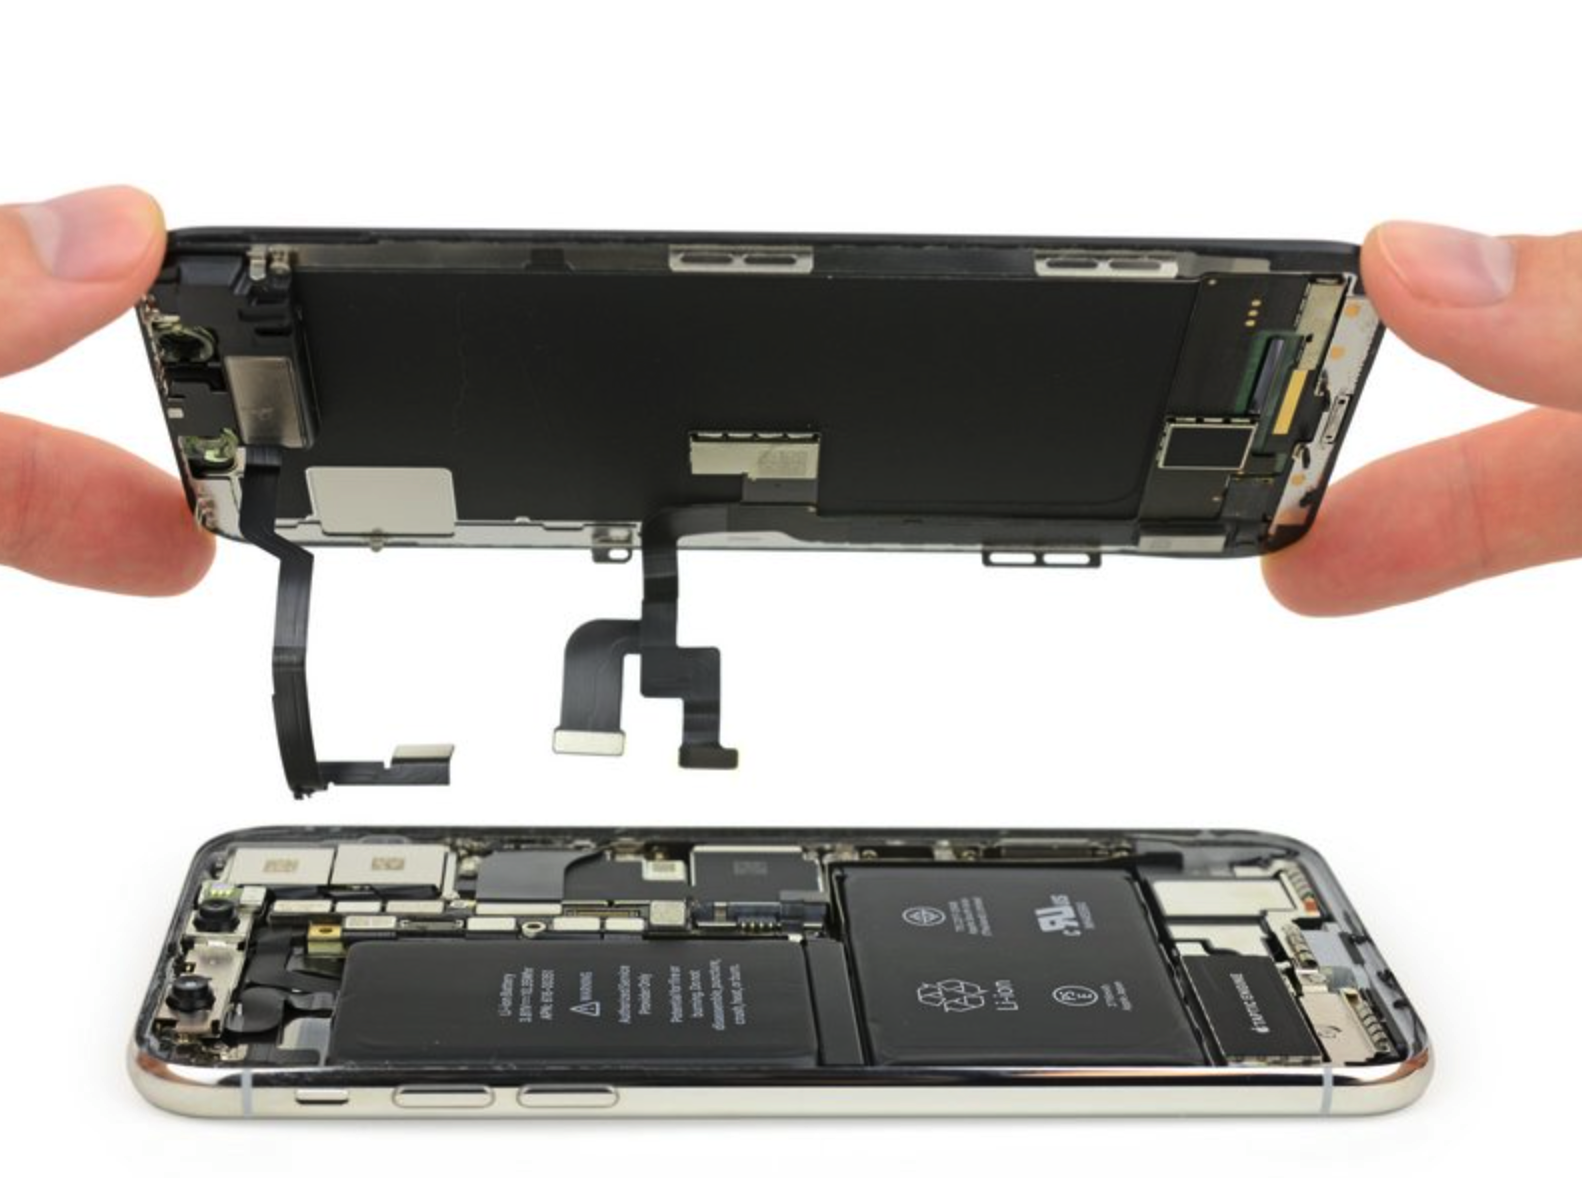 iShot2021 05 12 17.12.57 - Lanciato l’iPhone 12 viola e il numero di serie casuale di Apple